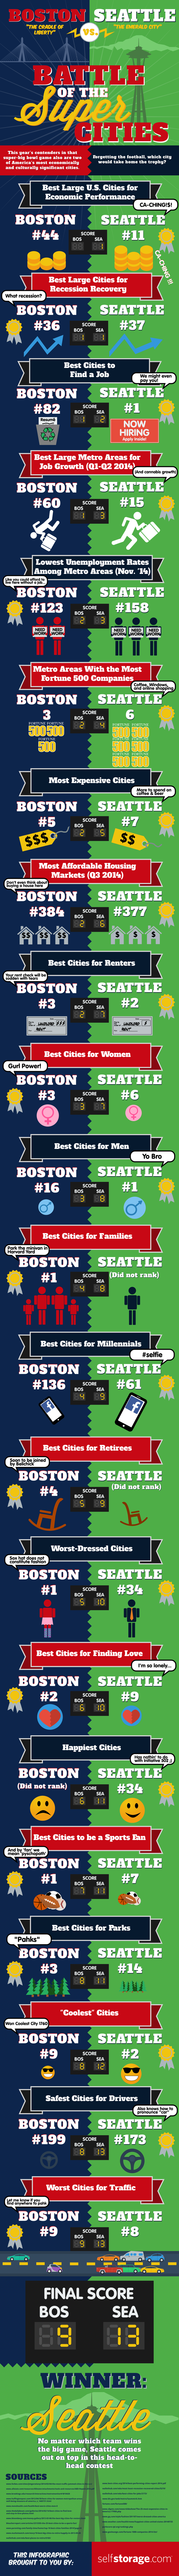 Seattle vs Boston Super Cities